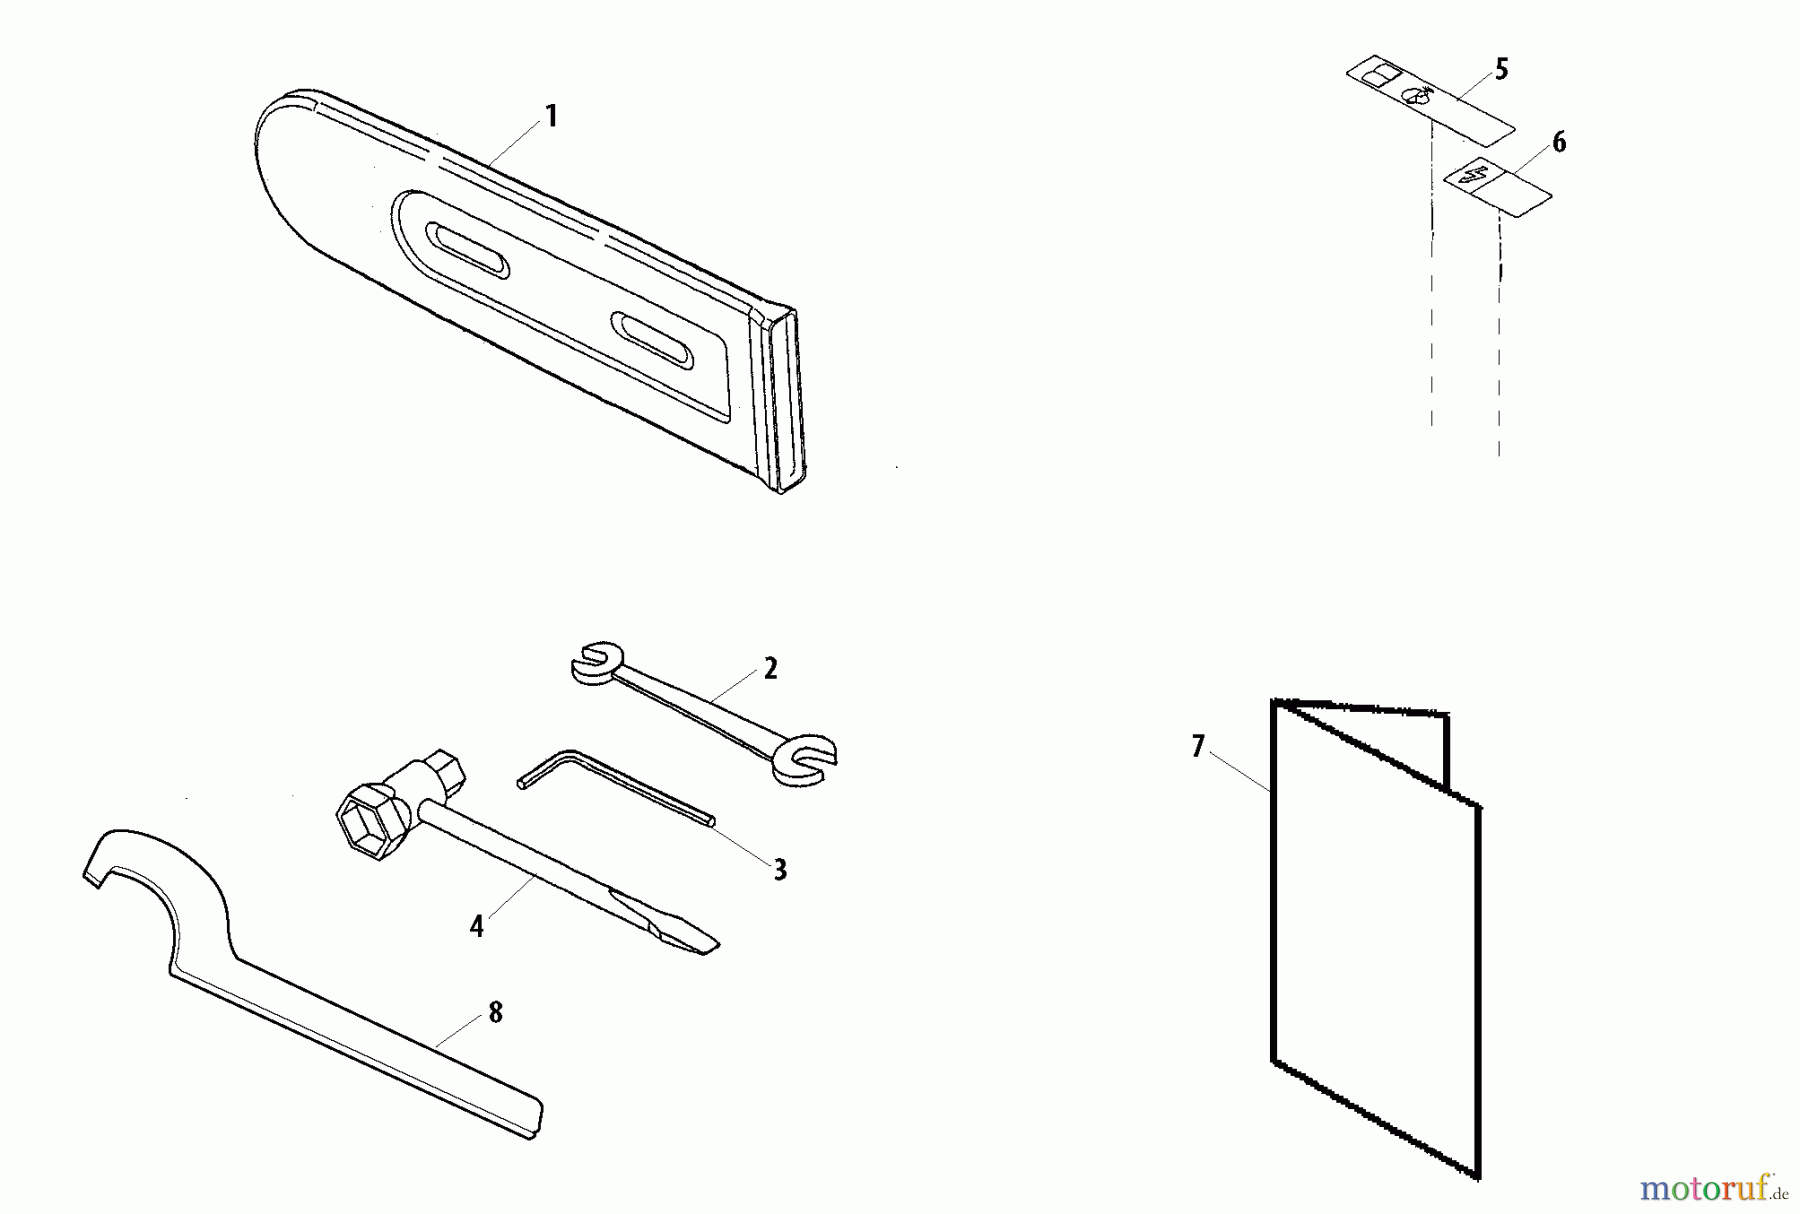  Shindaiwa Trimmer, Faden / Bürste 78701 - Shindaiwa Articulating Hedge Trimmer Attachment Accessories (Part 1)